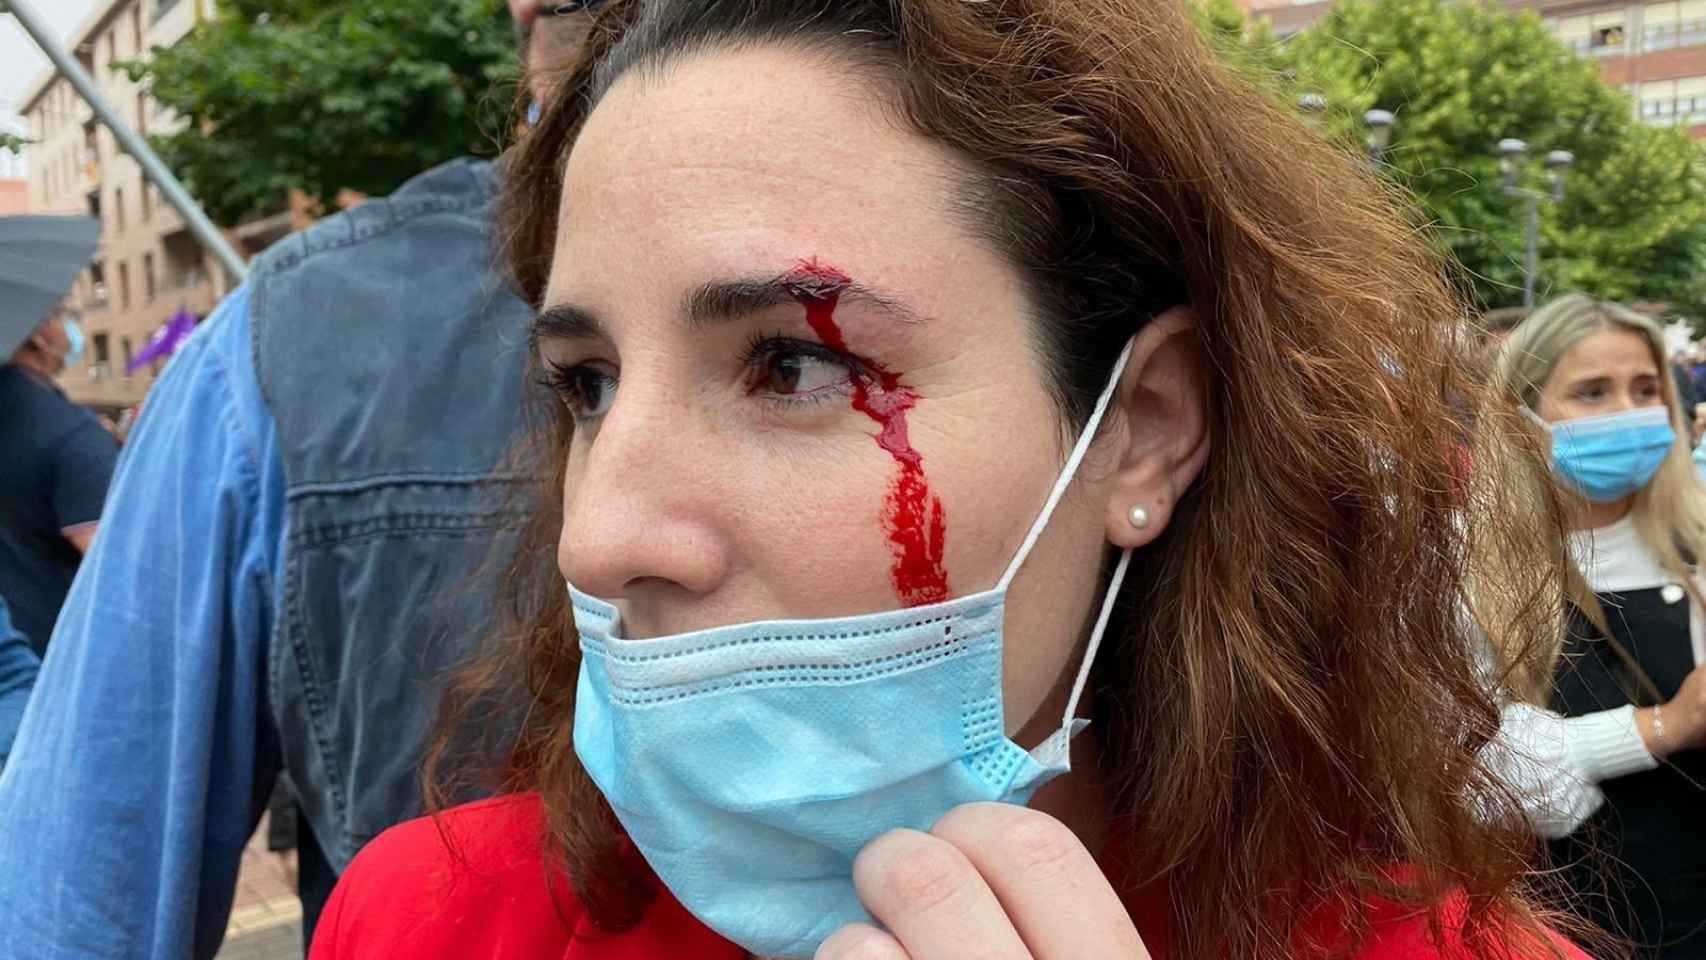 La diputada Rocío de Meer, herida tras recibir una pedrada en Sestao.